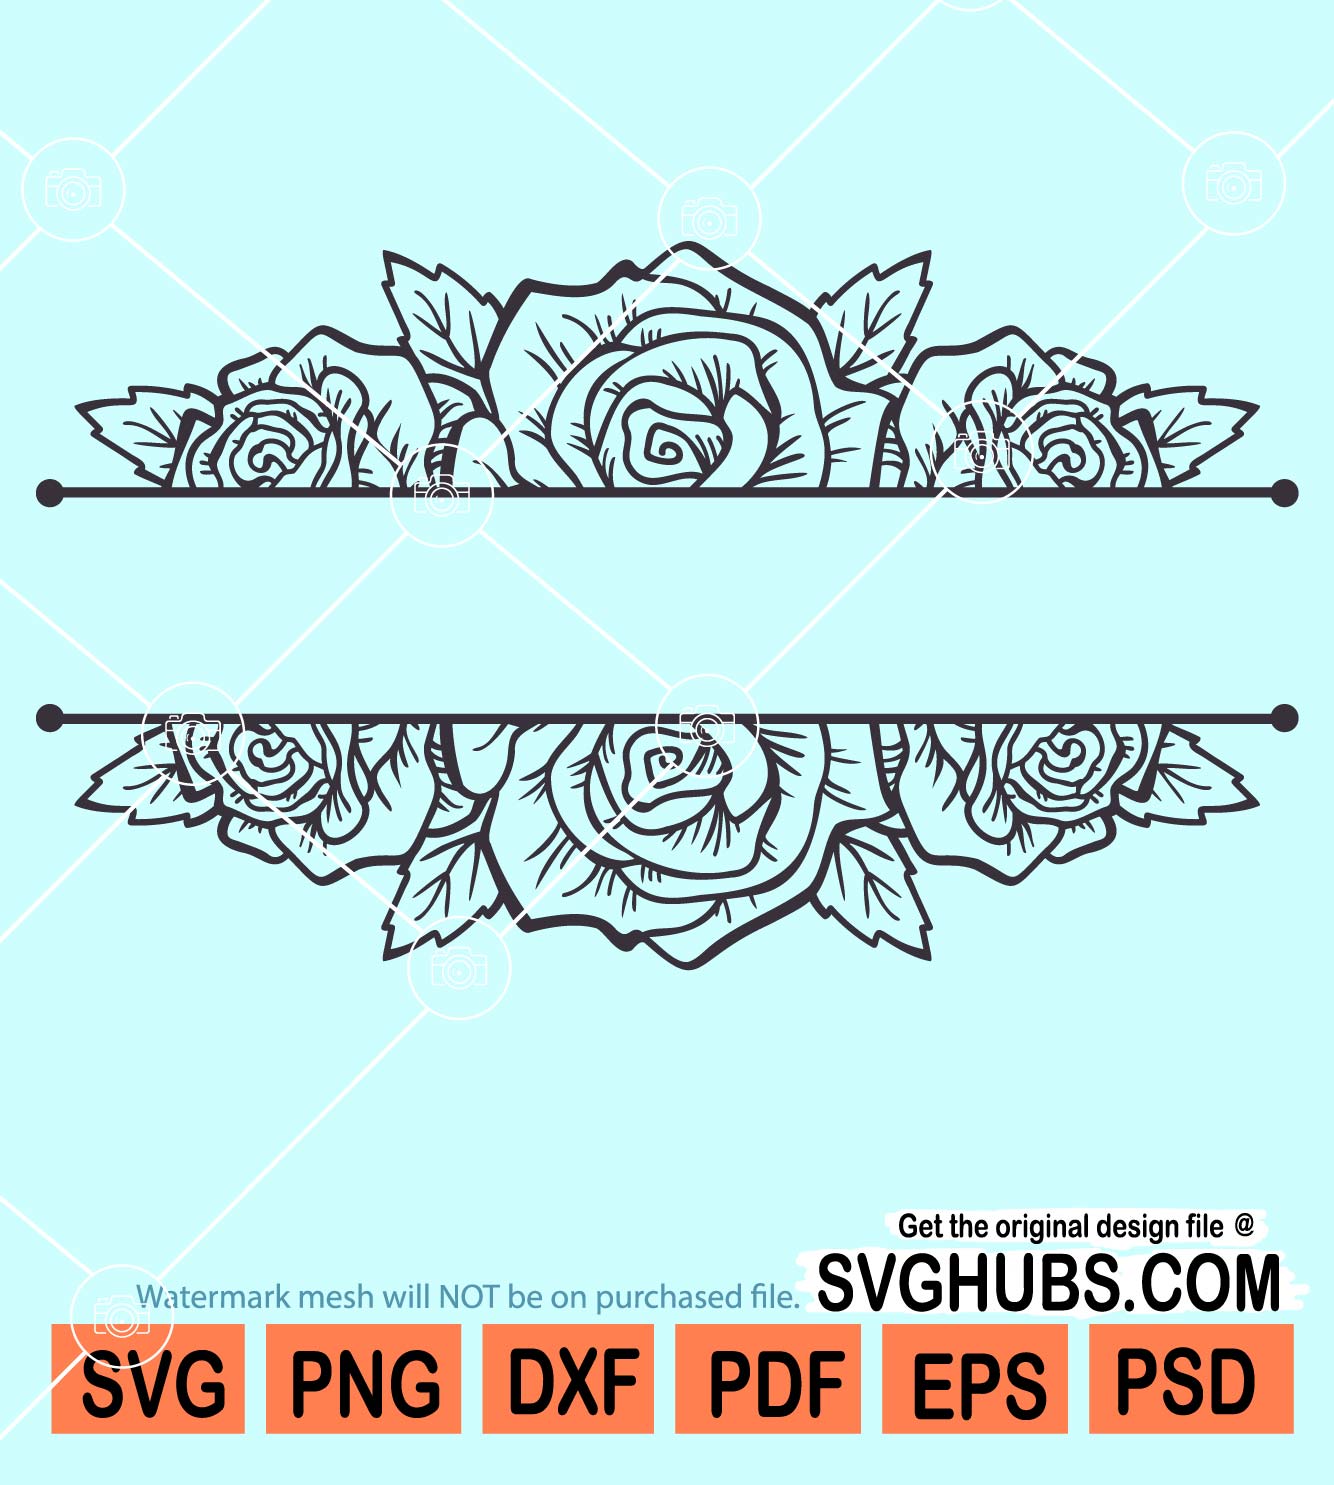 Floral Split Monogram, Flower Border SVG, Flower Monogram